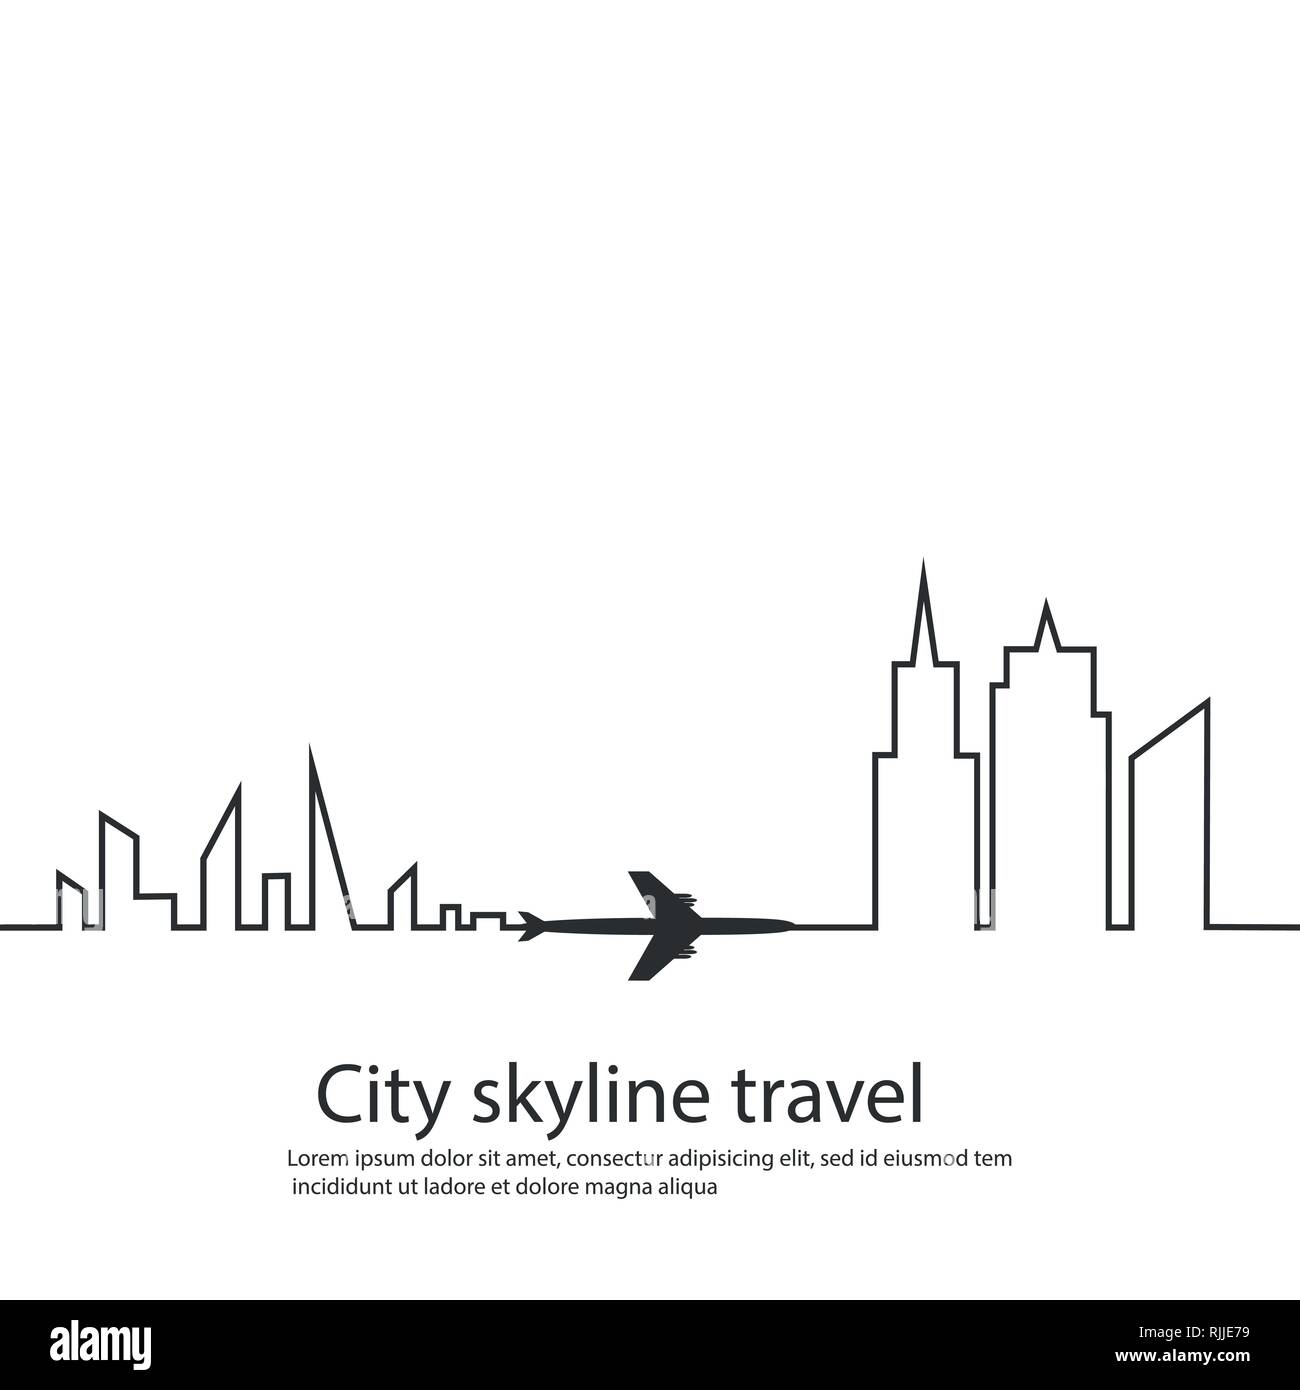 Flugzeug zwischen den beiden Städten und ihren Anschluss und Skyline auf weißem Hintergrund. Vector Illustration. Flugzeuge fliegen und seine Route. Tourismus Stock Vektor